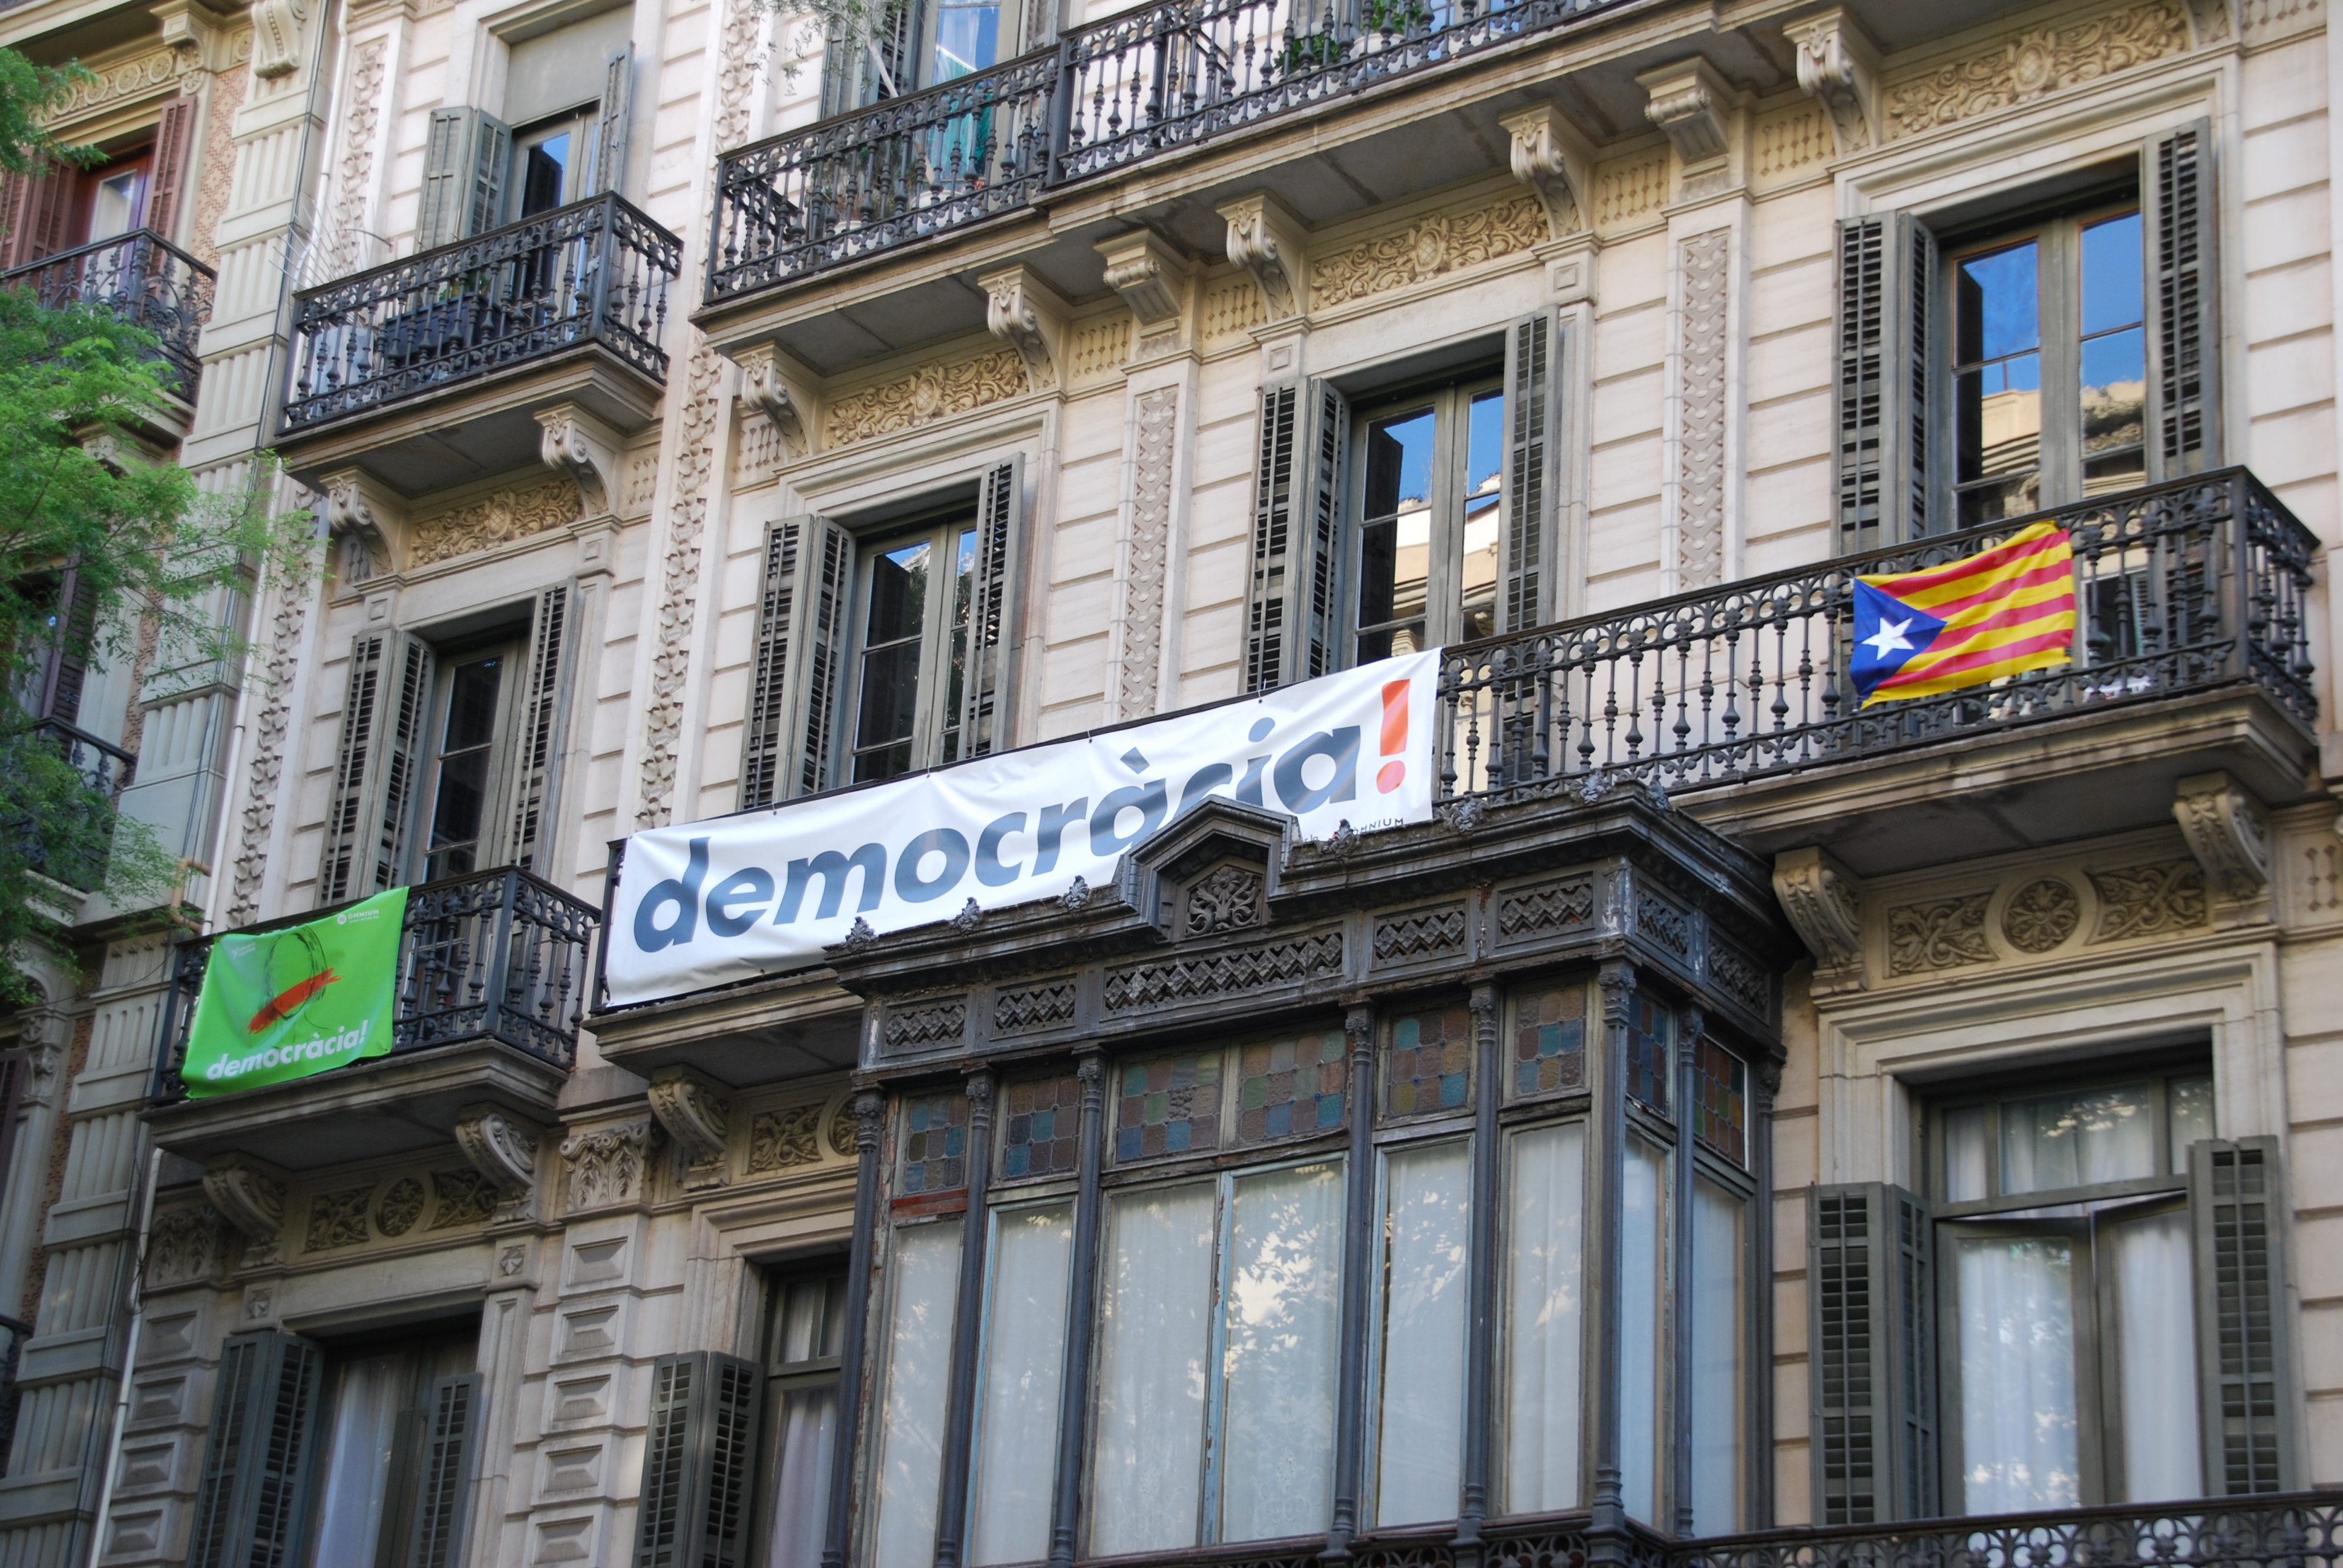 A balcony in Barcelona (by Marta Pedregal)